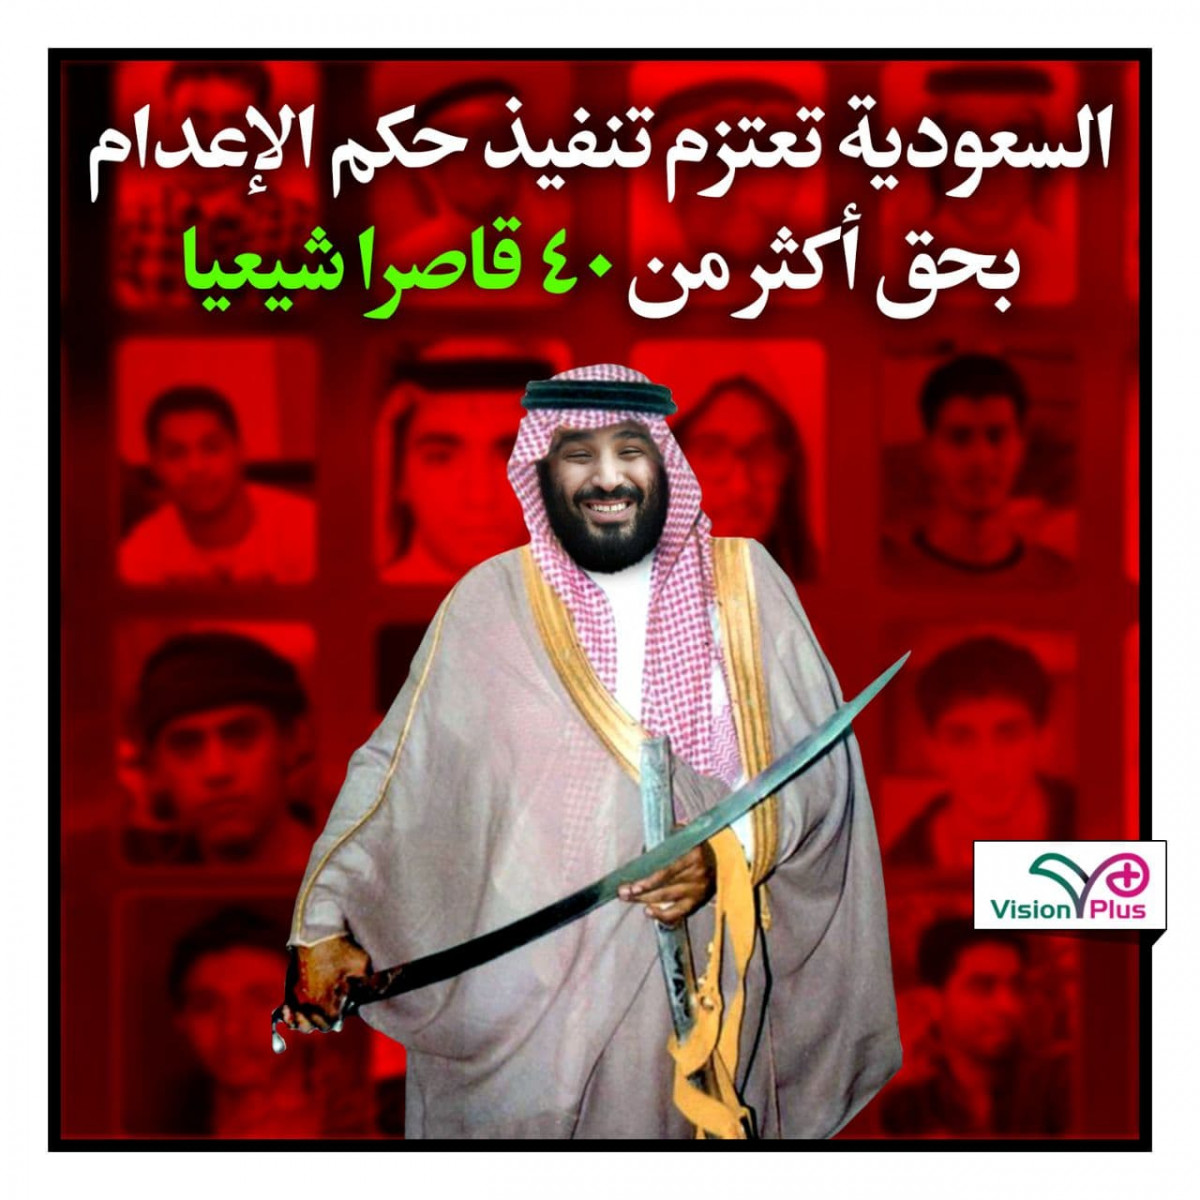 السعودية تعتزم تنفيذ حكم الإعدام بحق أكثر من ۴۰ قاصرا شيعيا